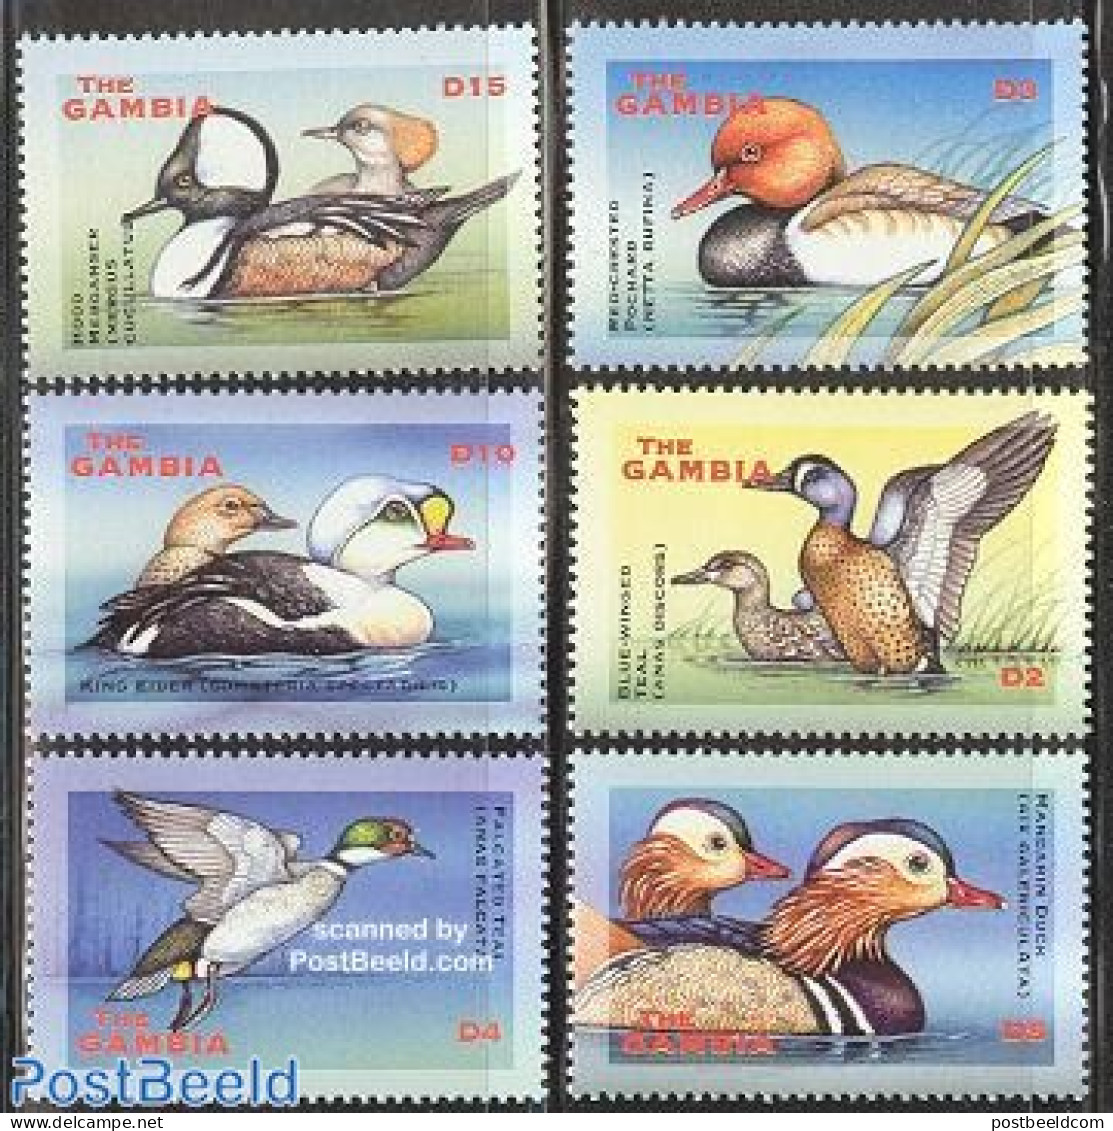 Gambia 2001 Ducks 6v, Mint NH, Nature - Birds - Ducks - Gambie (...-1964)